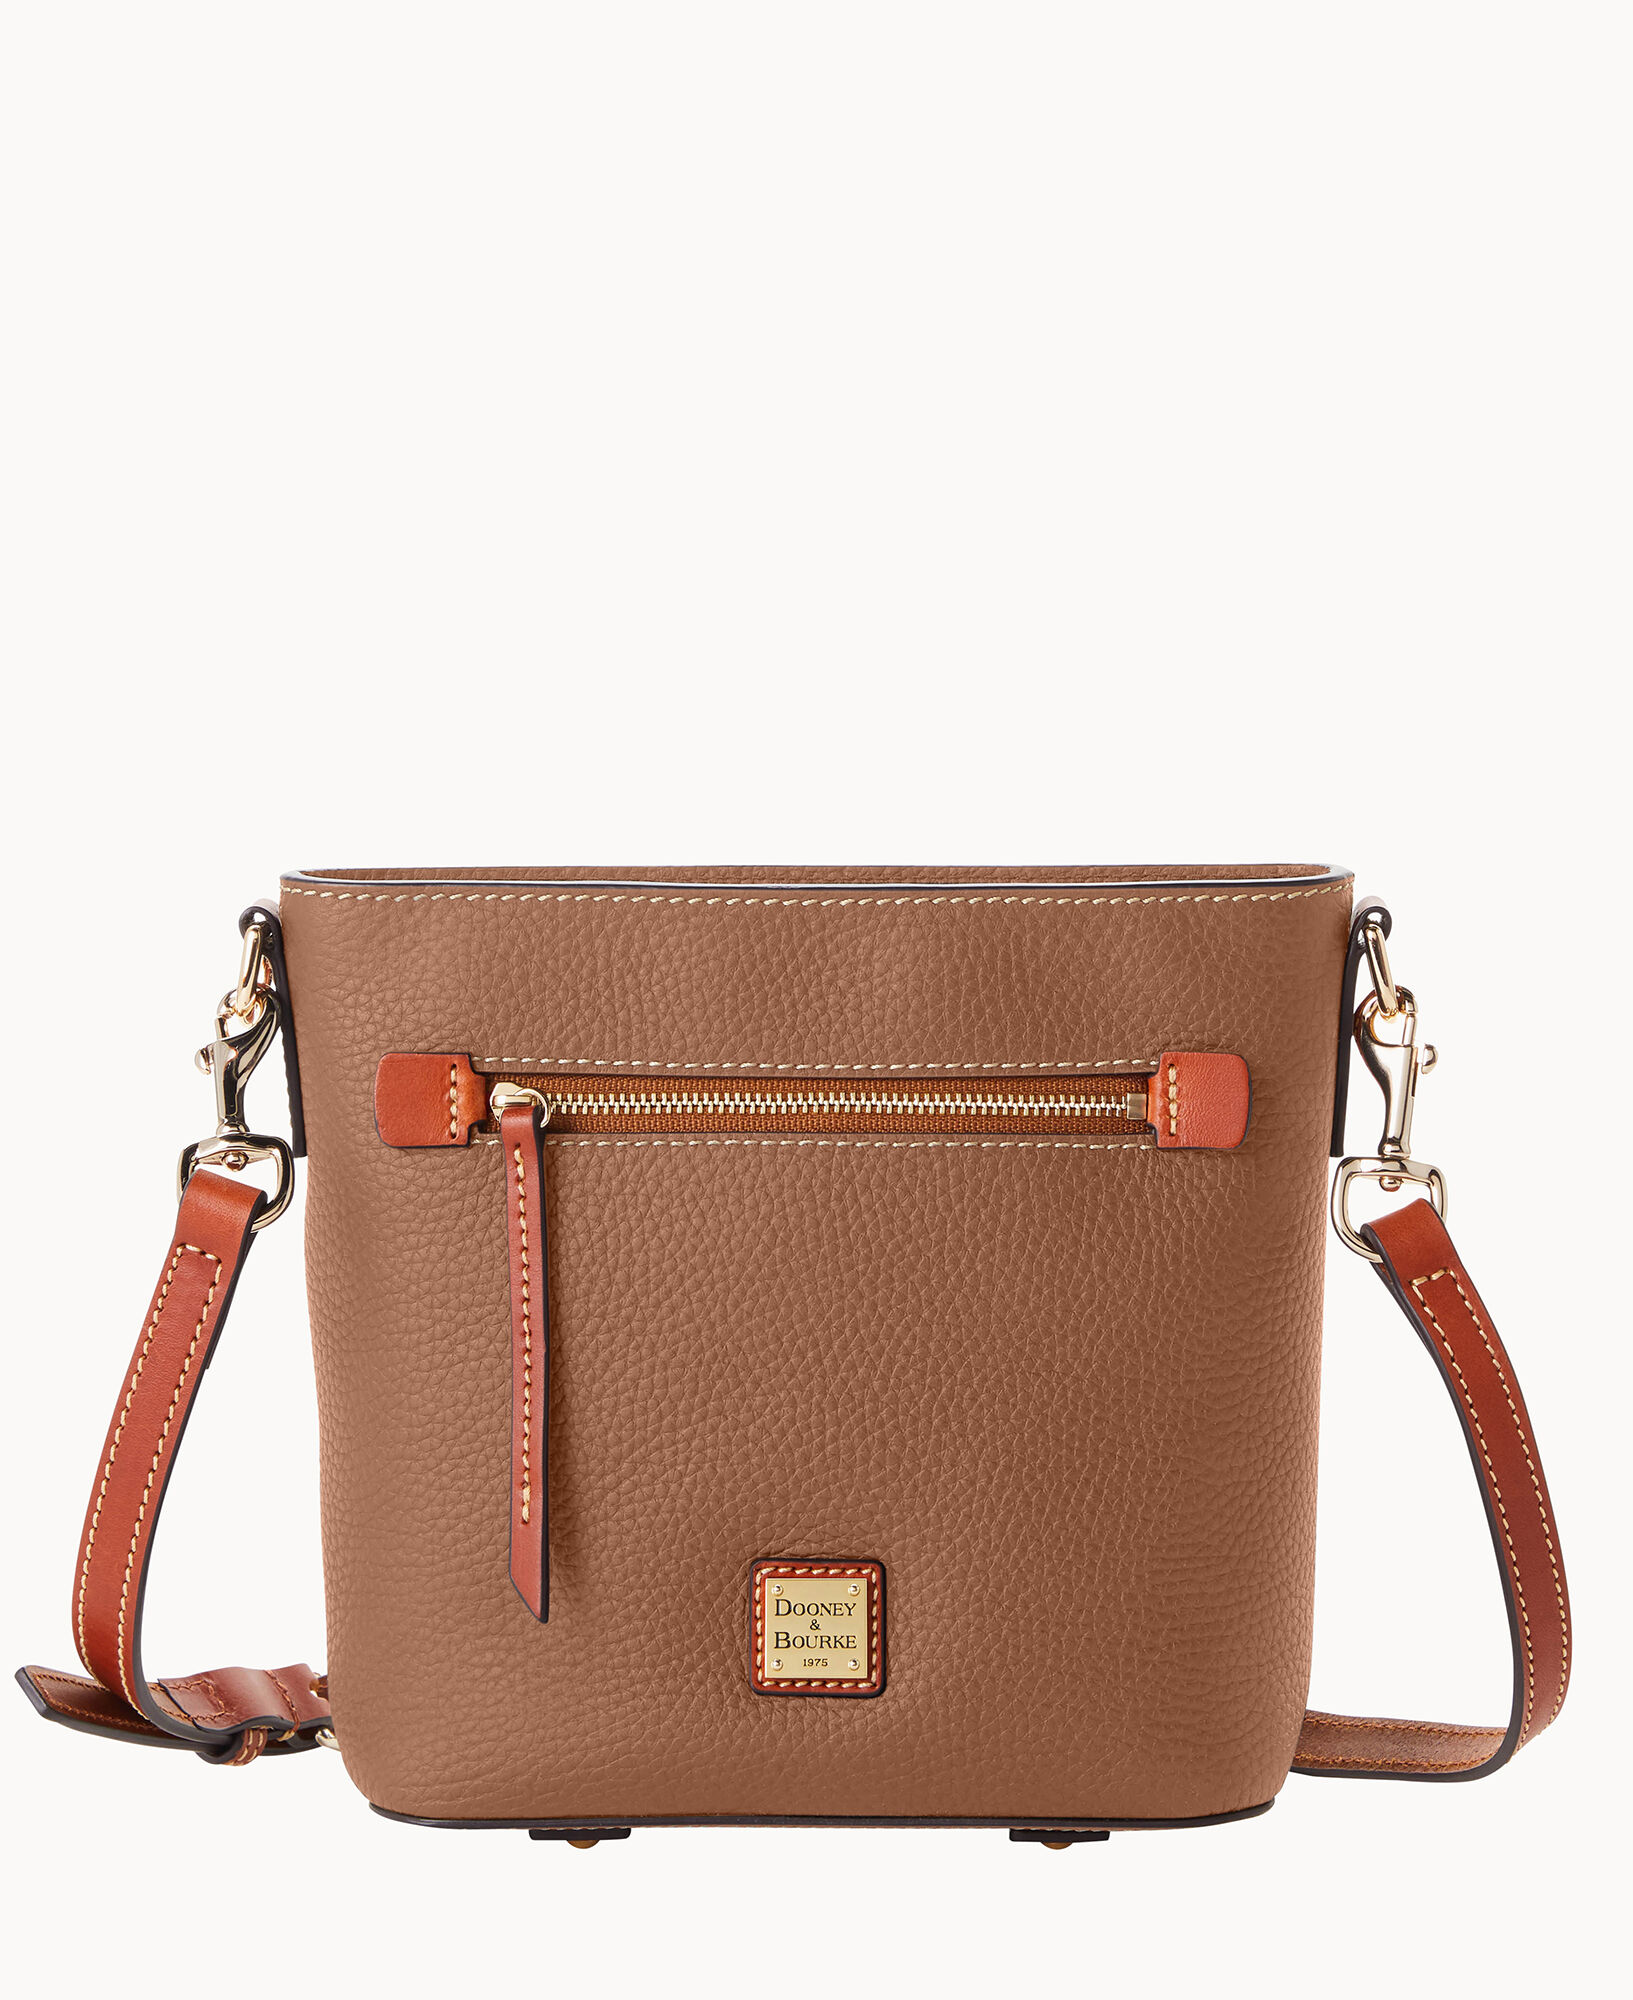 Dooney & Bourke Small Zip Crossbody Handbag